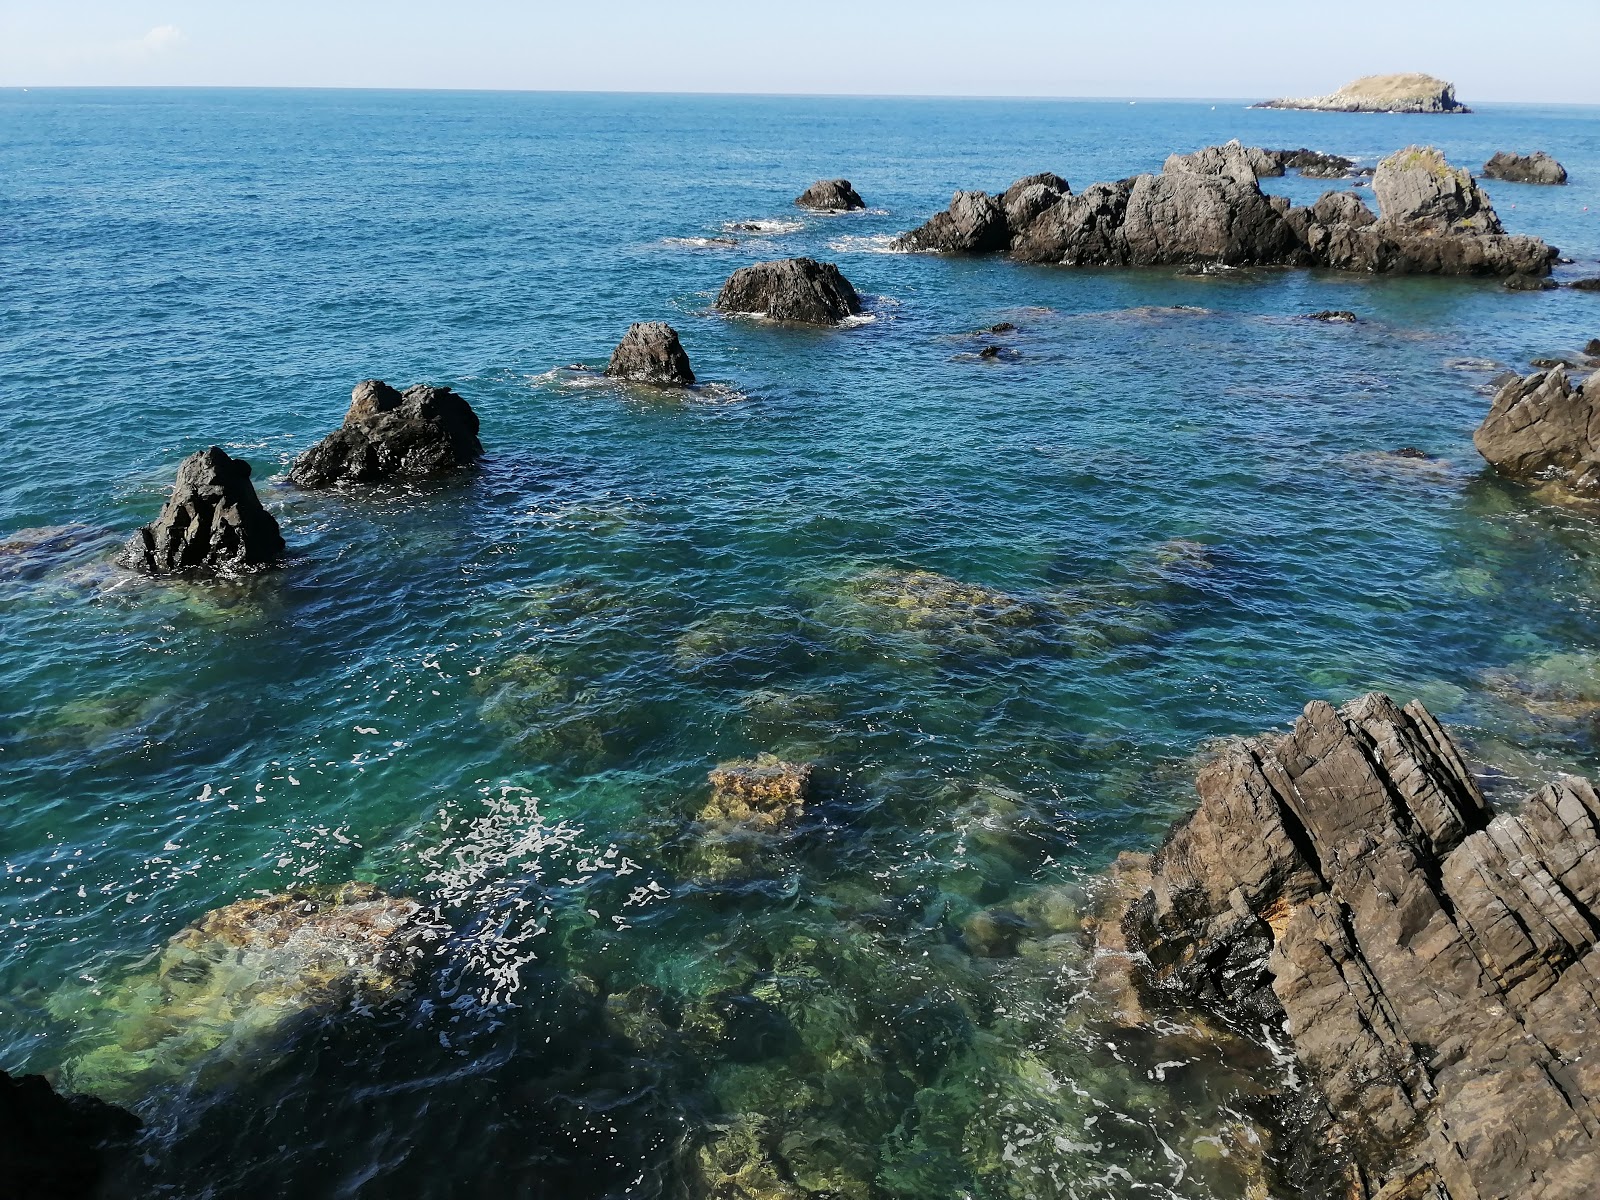 Foto de Spiaggia Illicini ubicado en área natural